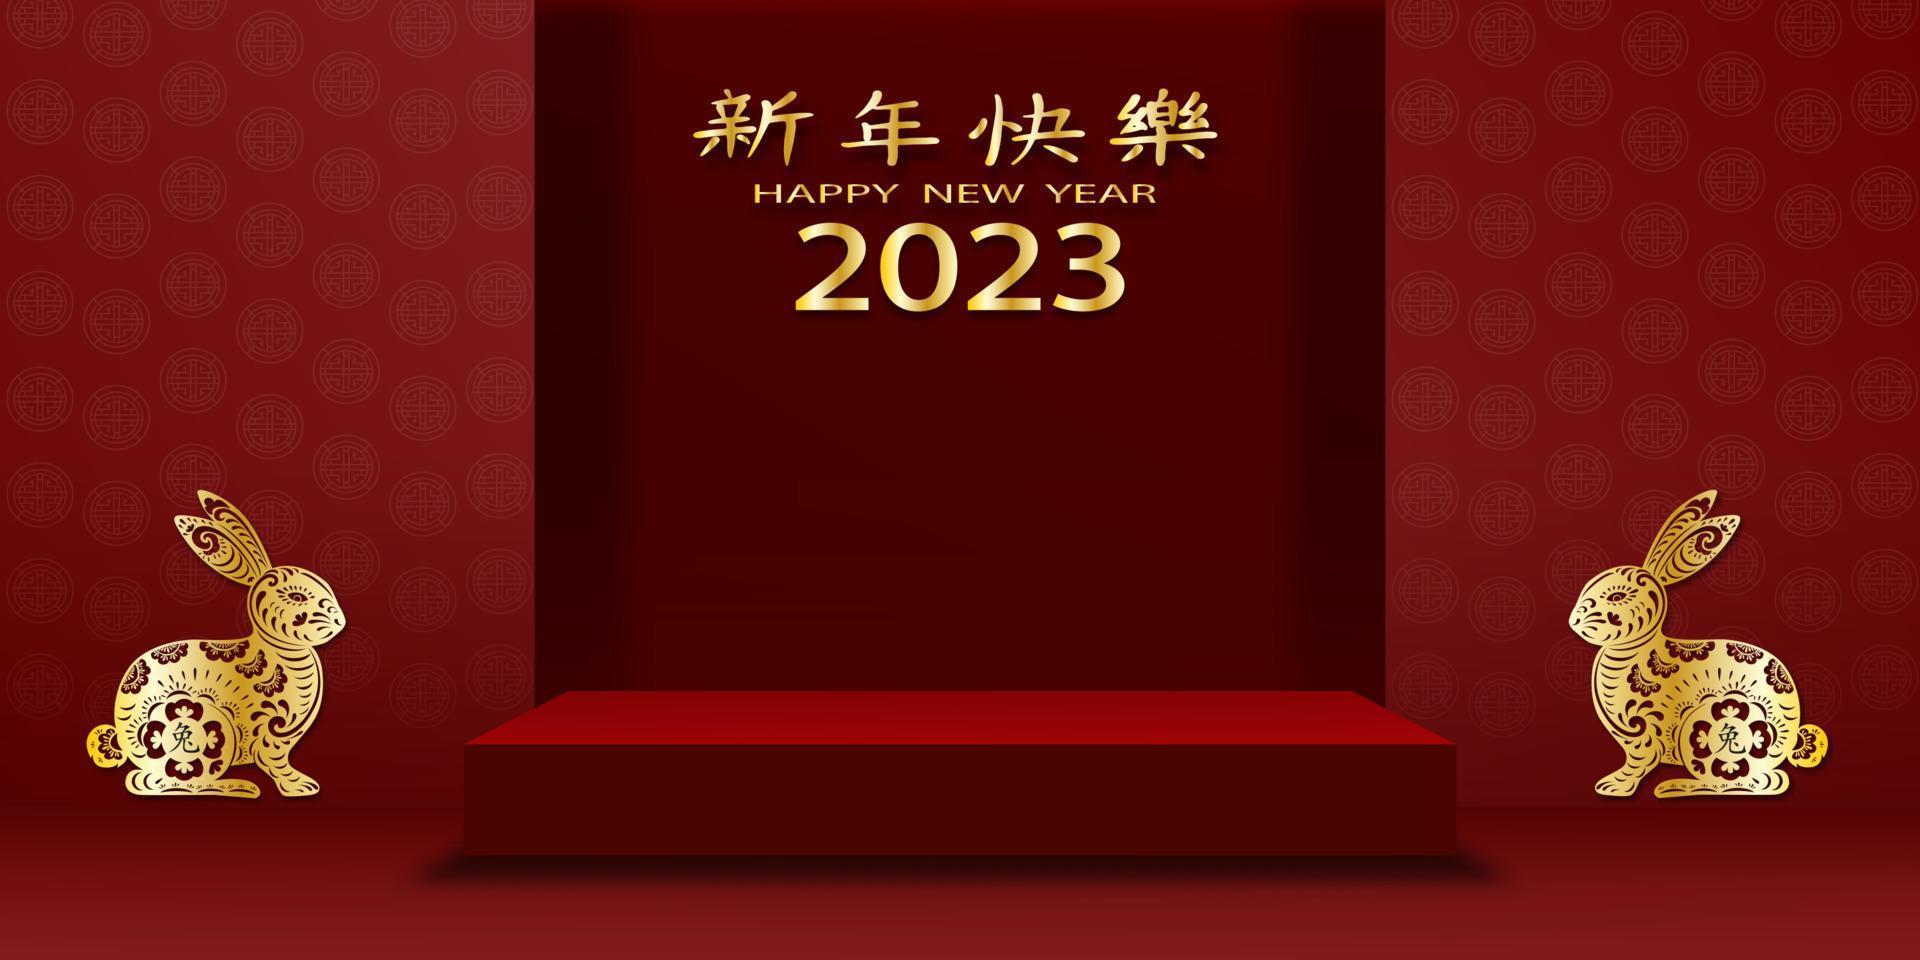 feliz año nuevo chino 2023, año del zodíaco del conejo, podio 3d de la sala de estudio con papel de conejo dorado cortado con flores en el fondo de la pared roja, traducción, feliz año nuevo vector